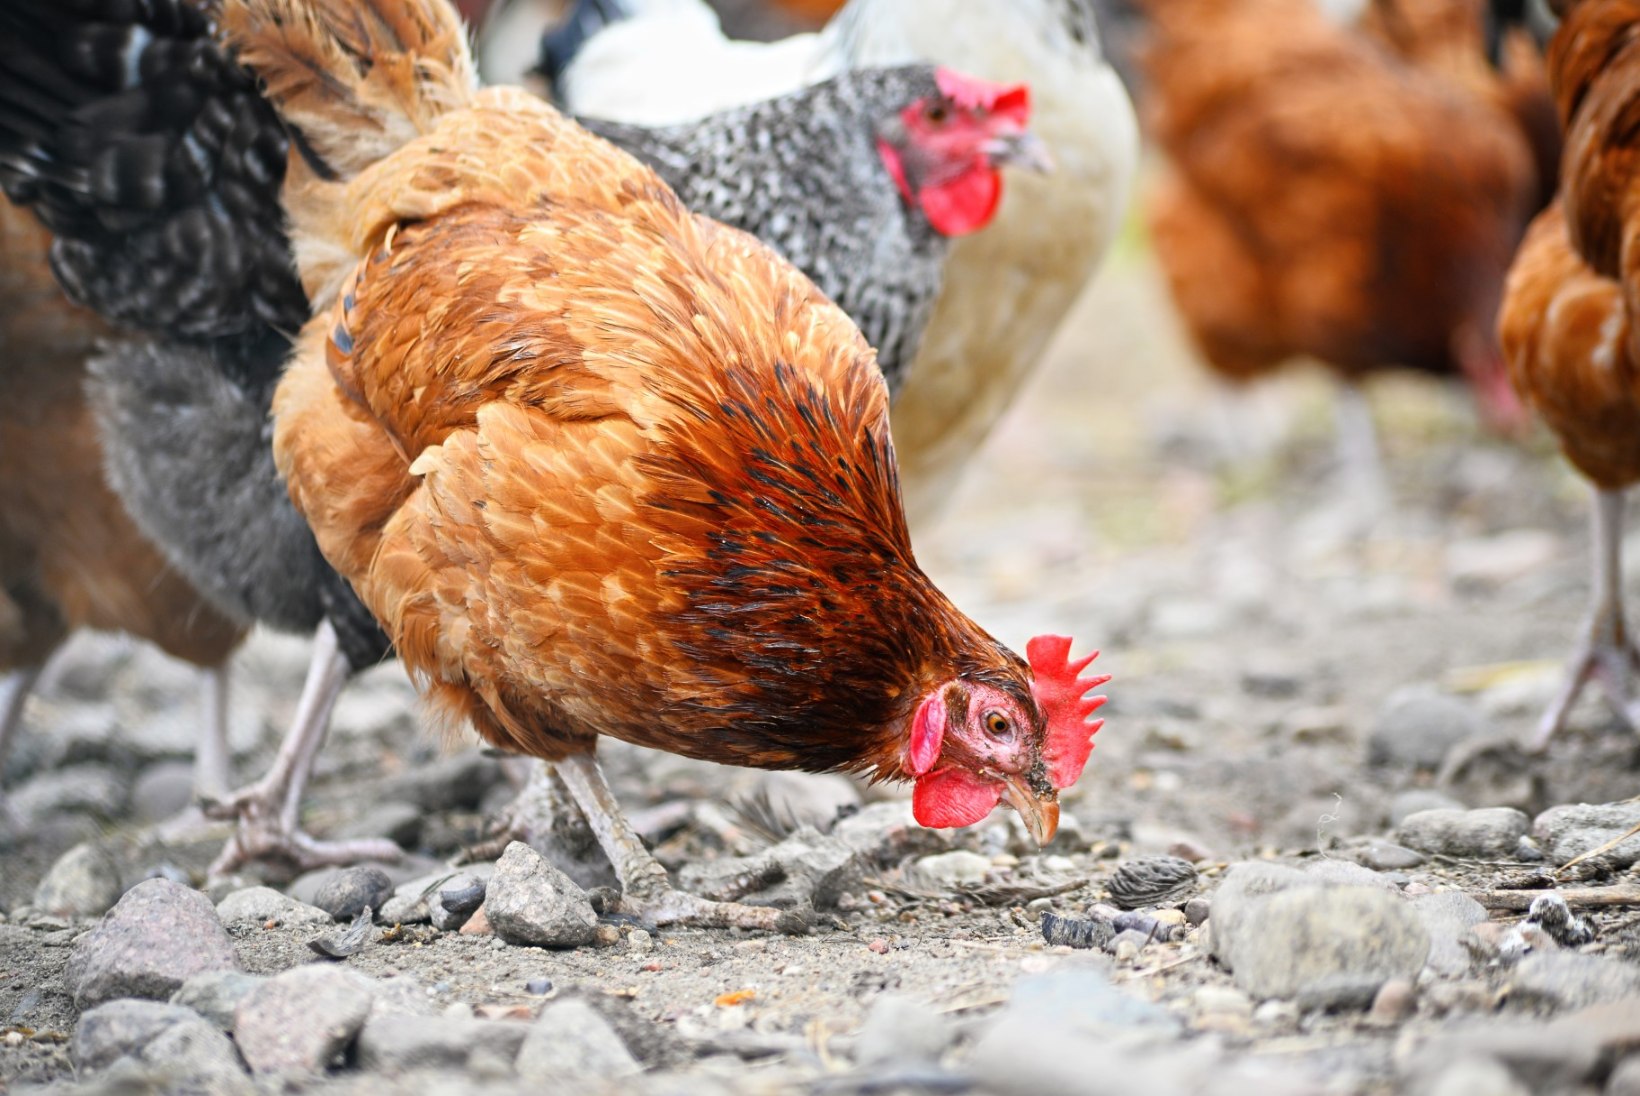 WHO hoiatab: aktiivselt leviv linnugripp võib muutuda inimestele nakkavaks